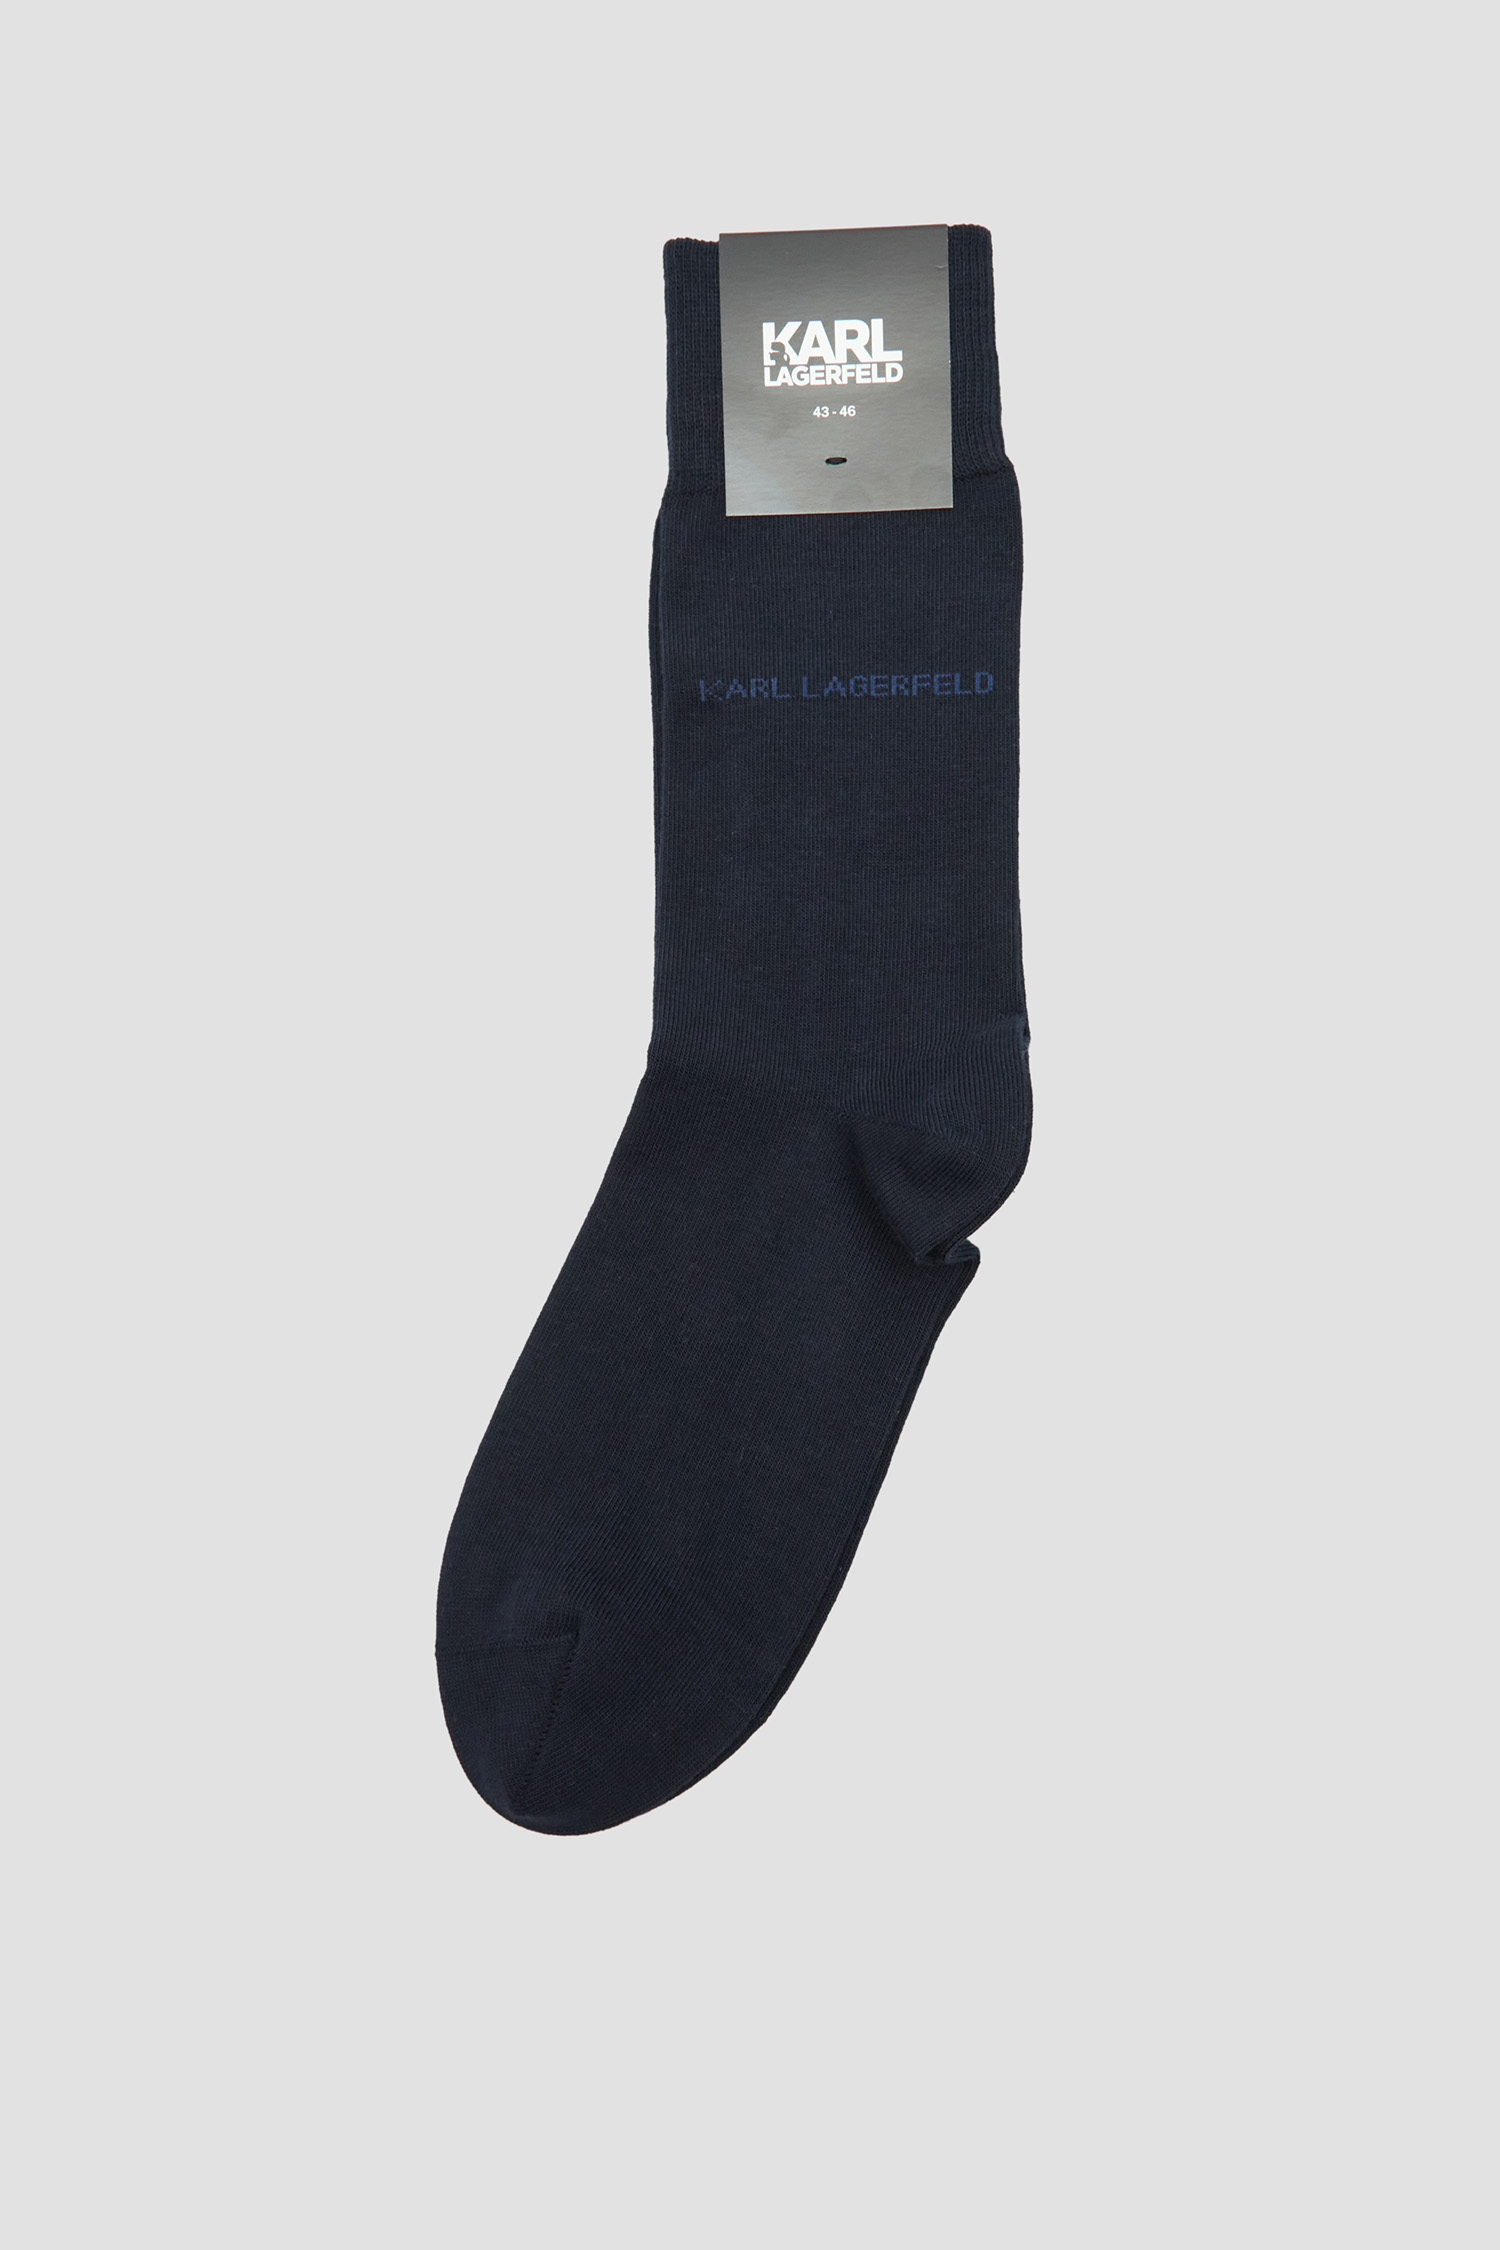 Чоловічі темно-сині шкарпетки Karl Lagerfeld 542102.805501;690